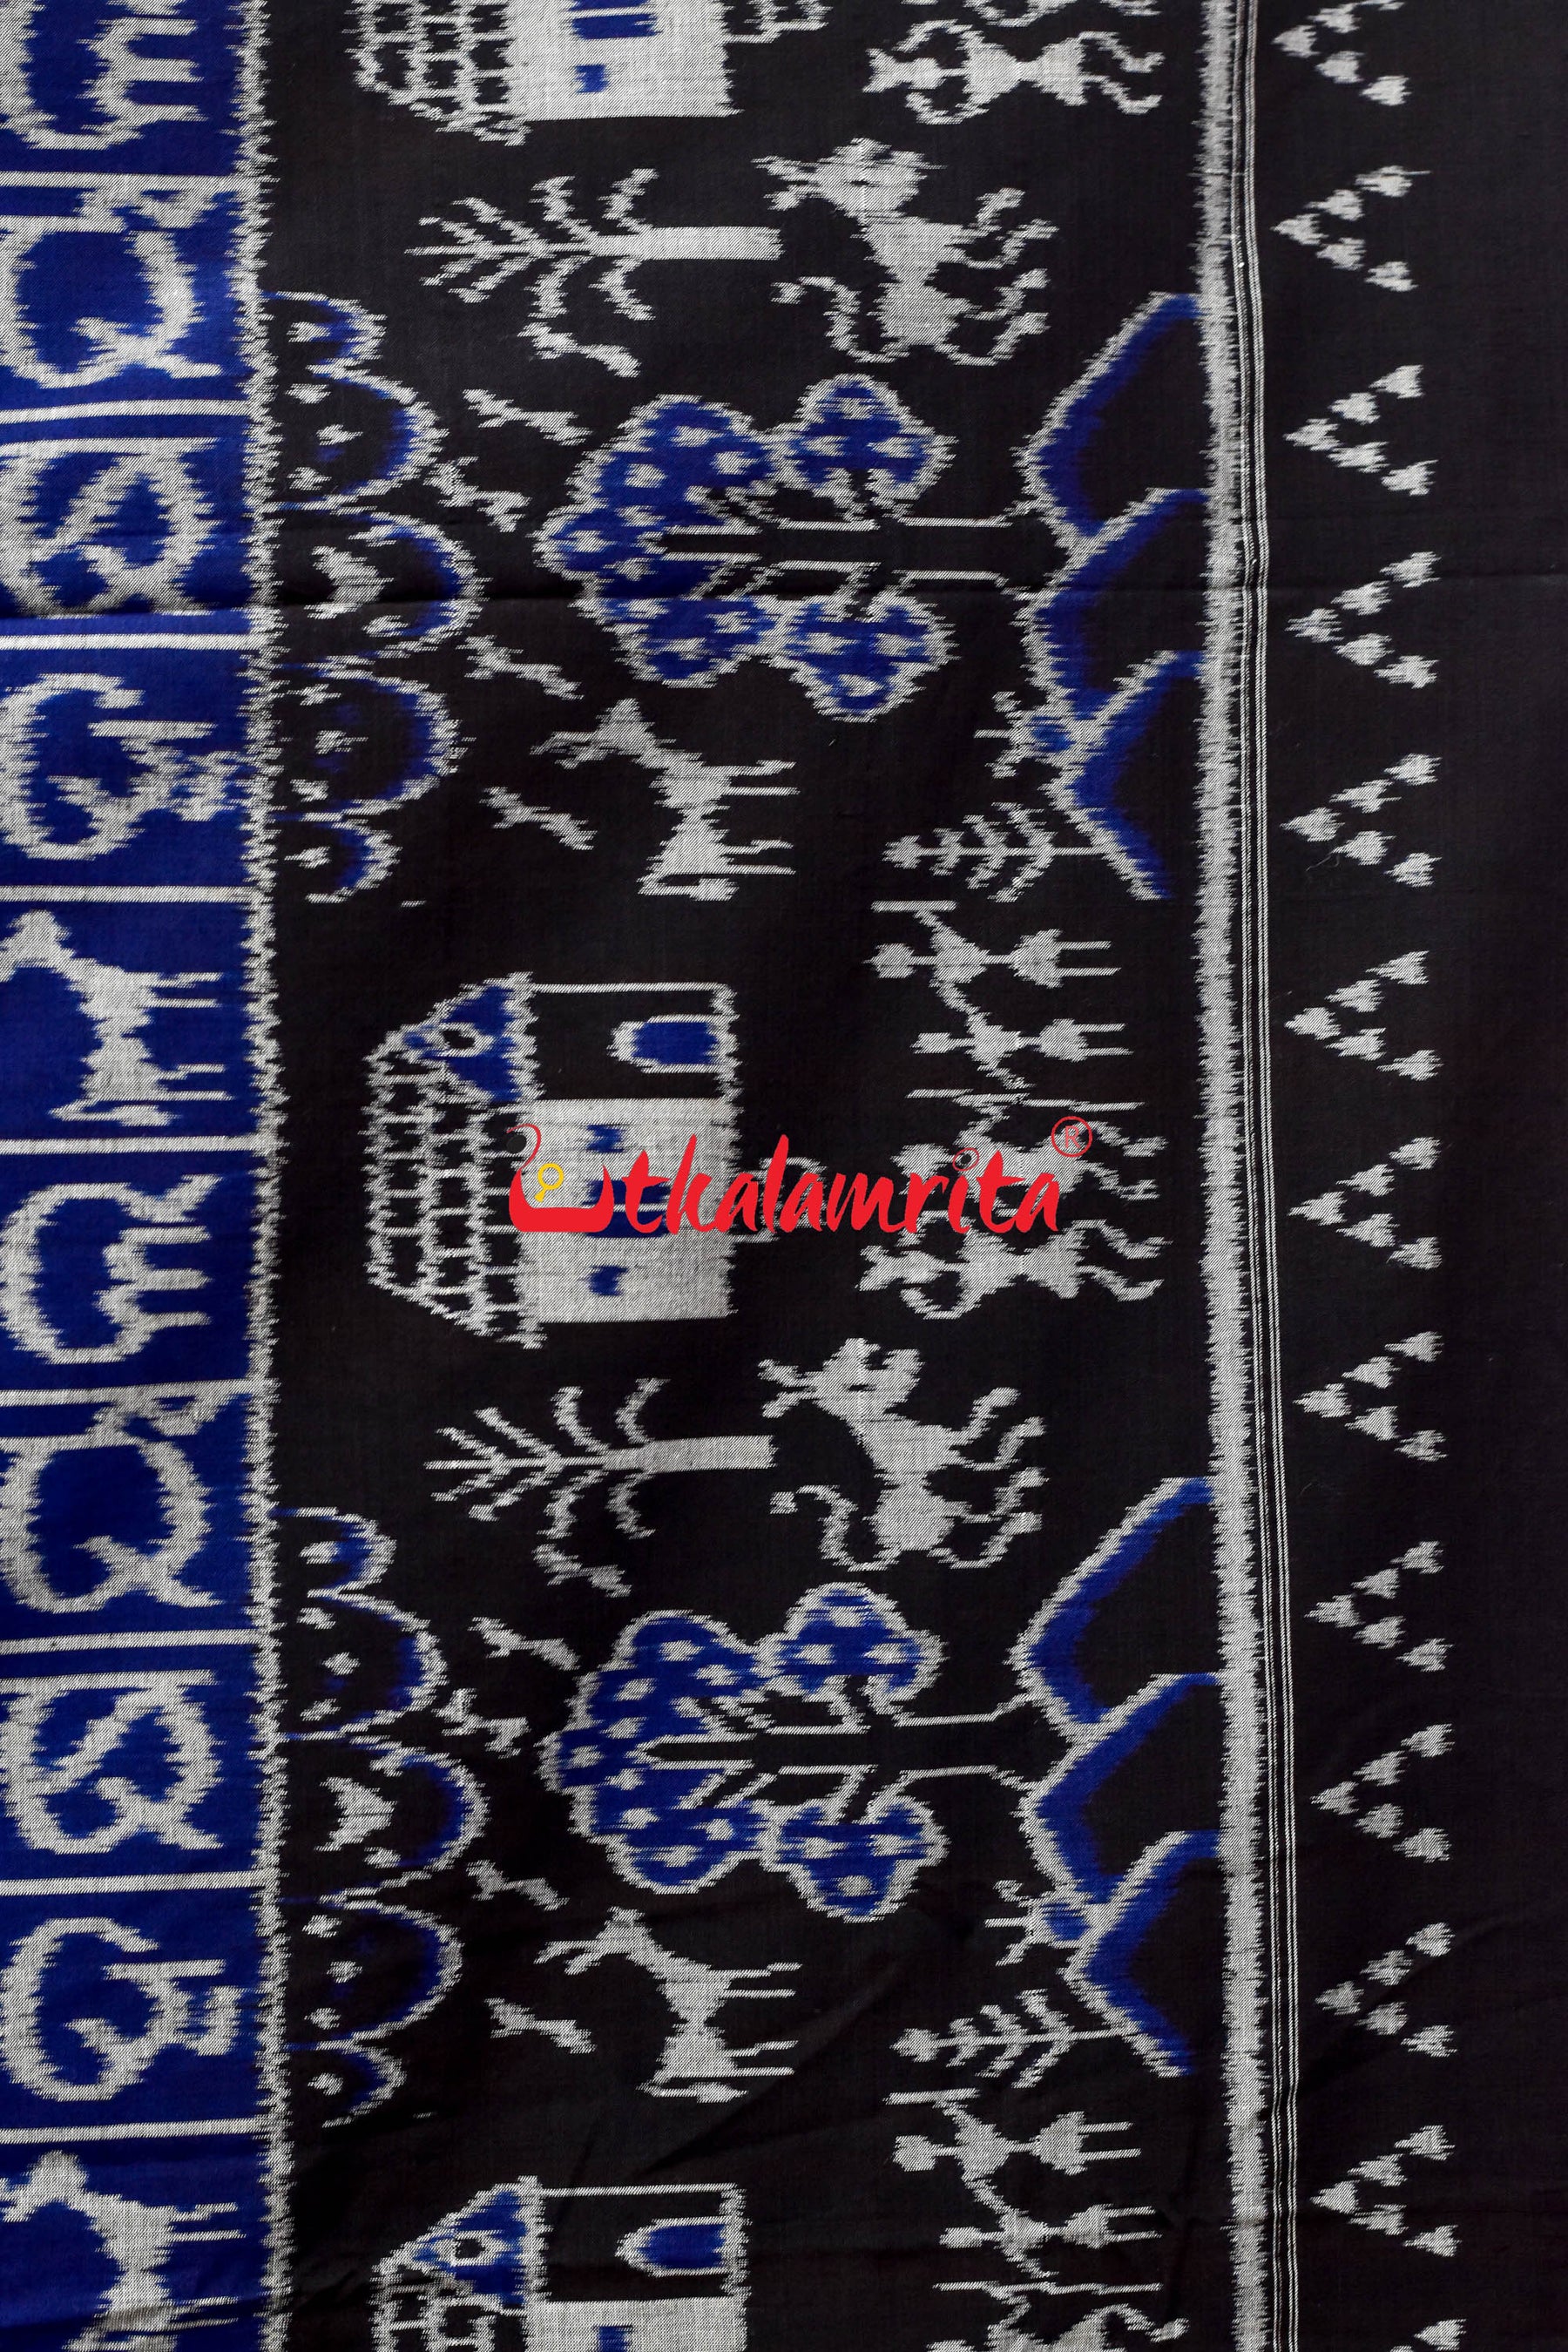 Blue Odia Alphabets Khandua Cotton Saree